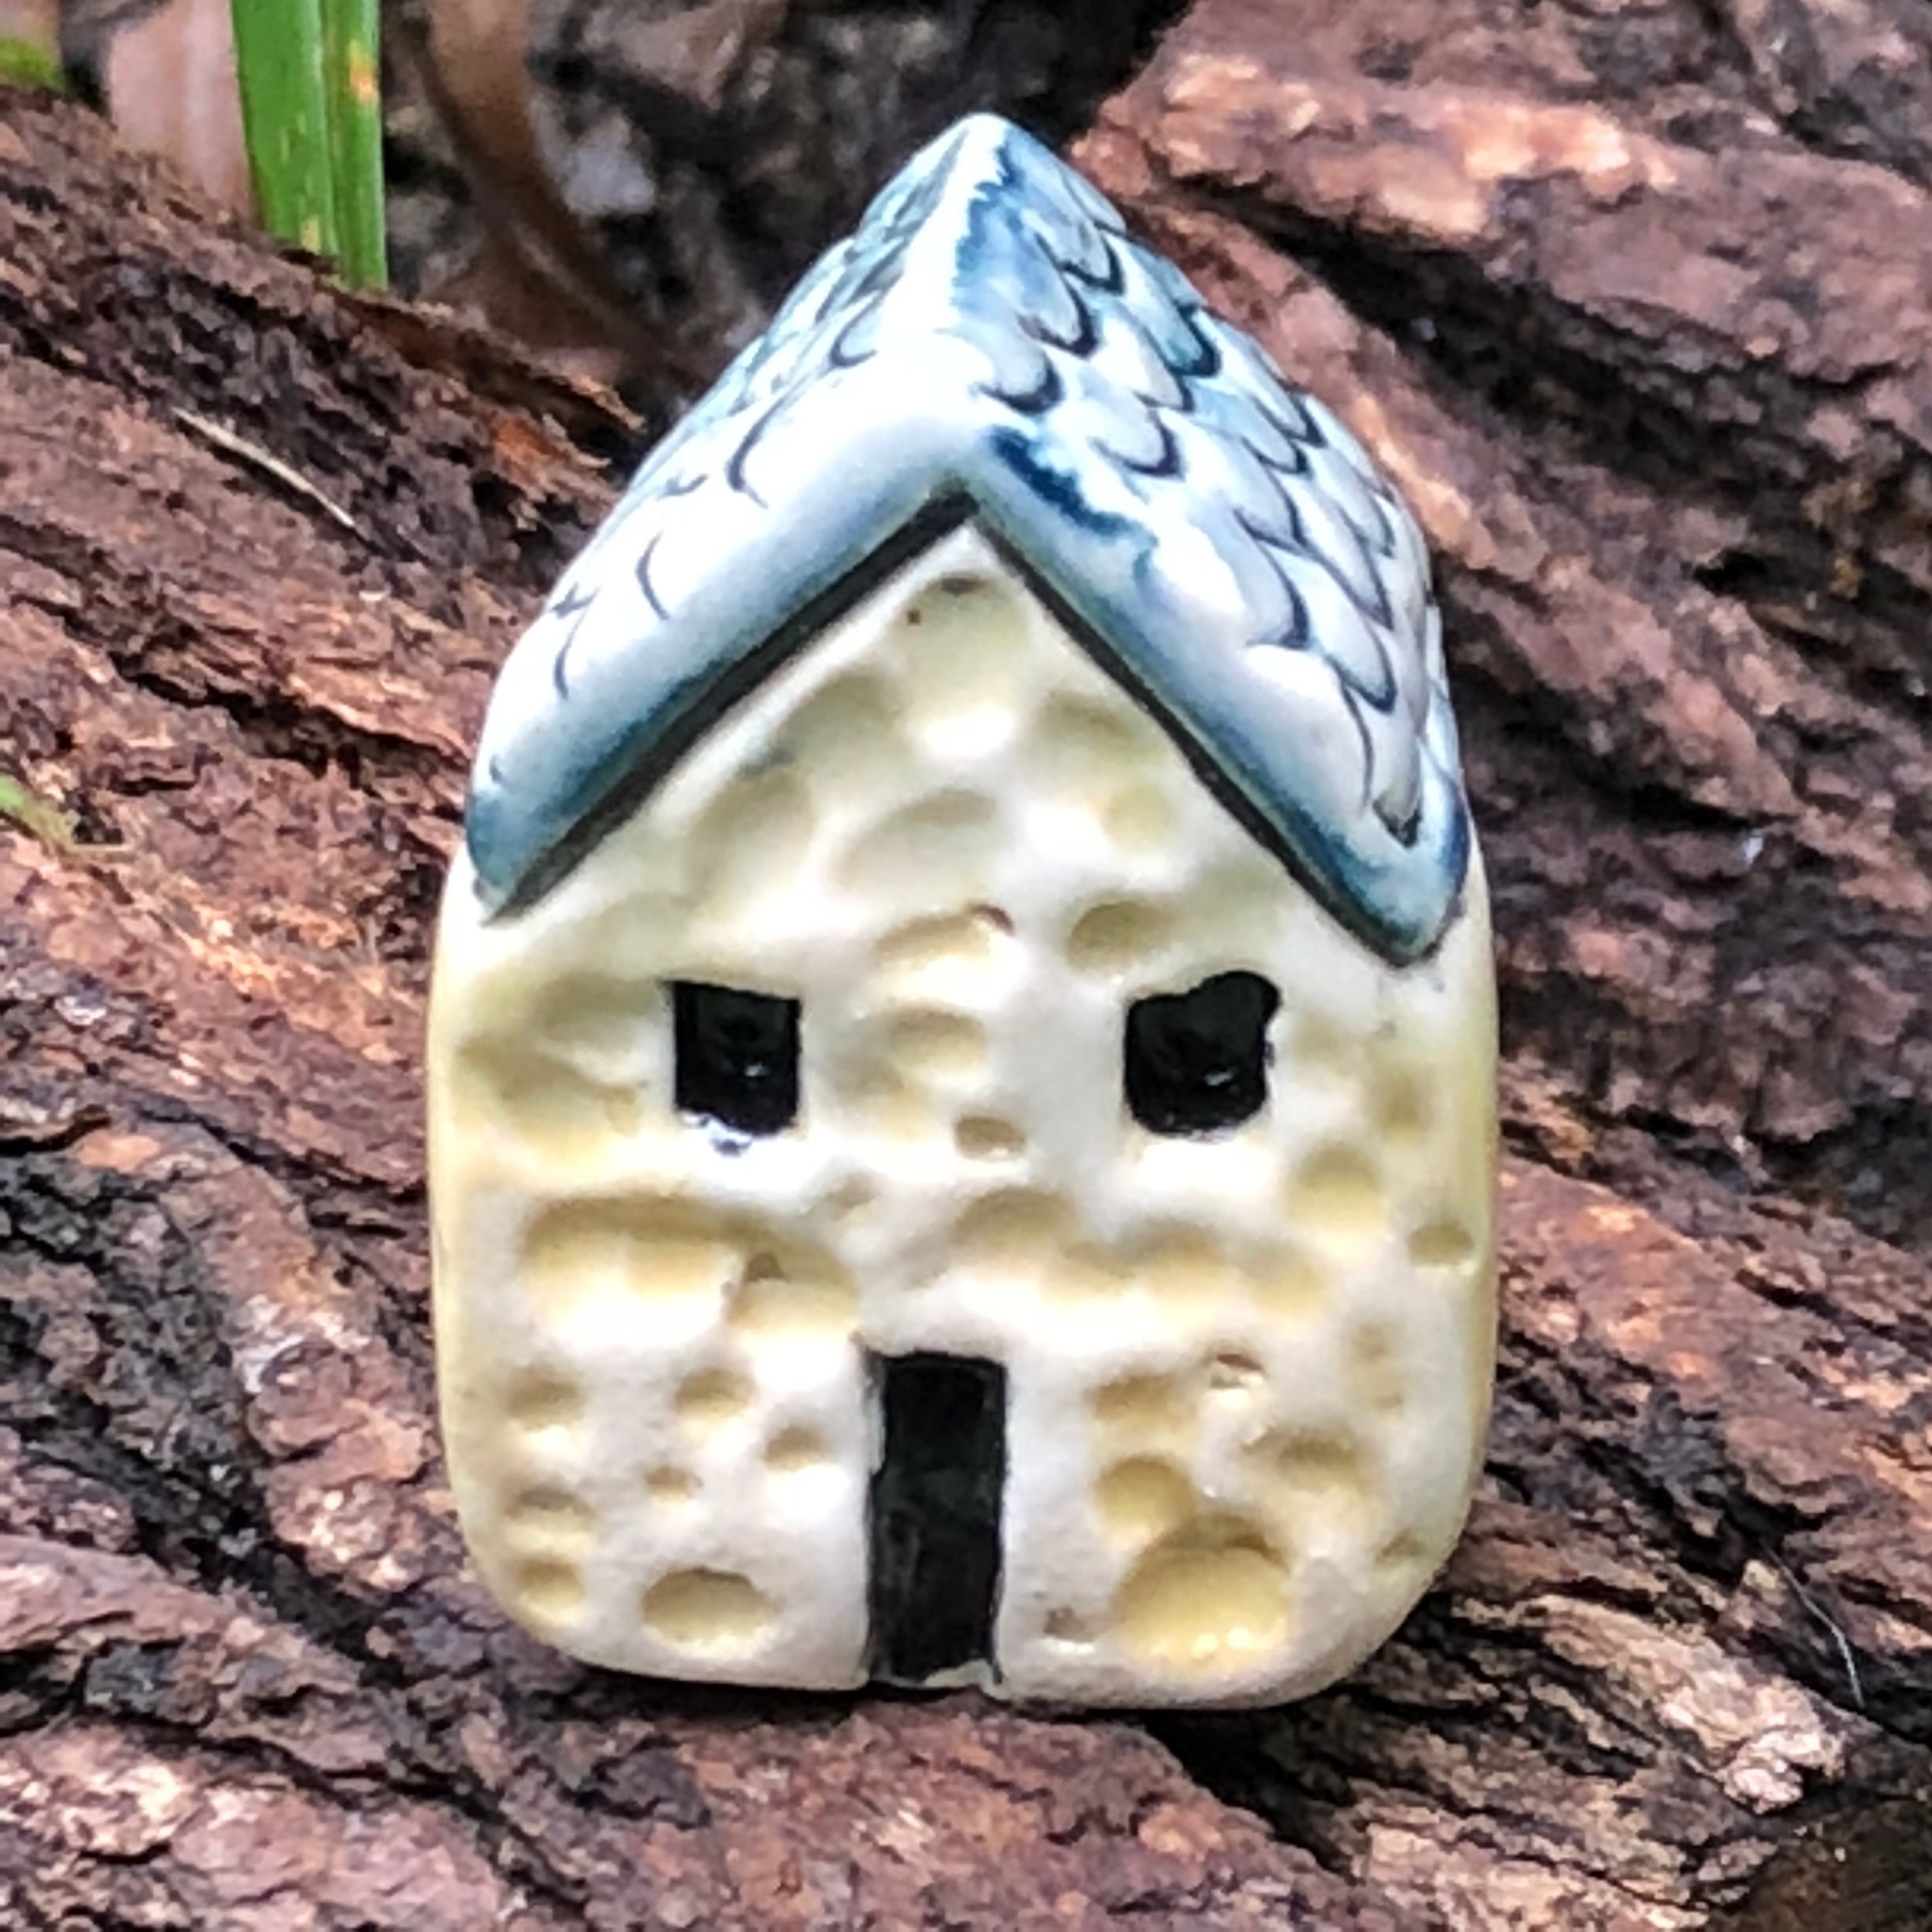 Tiny ceramic house